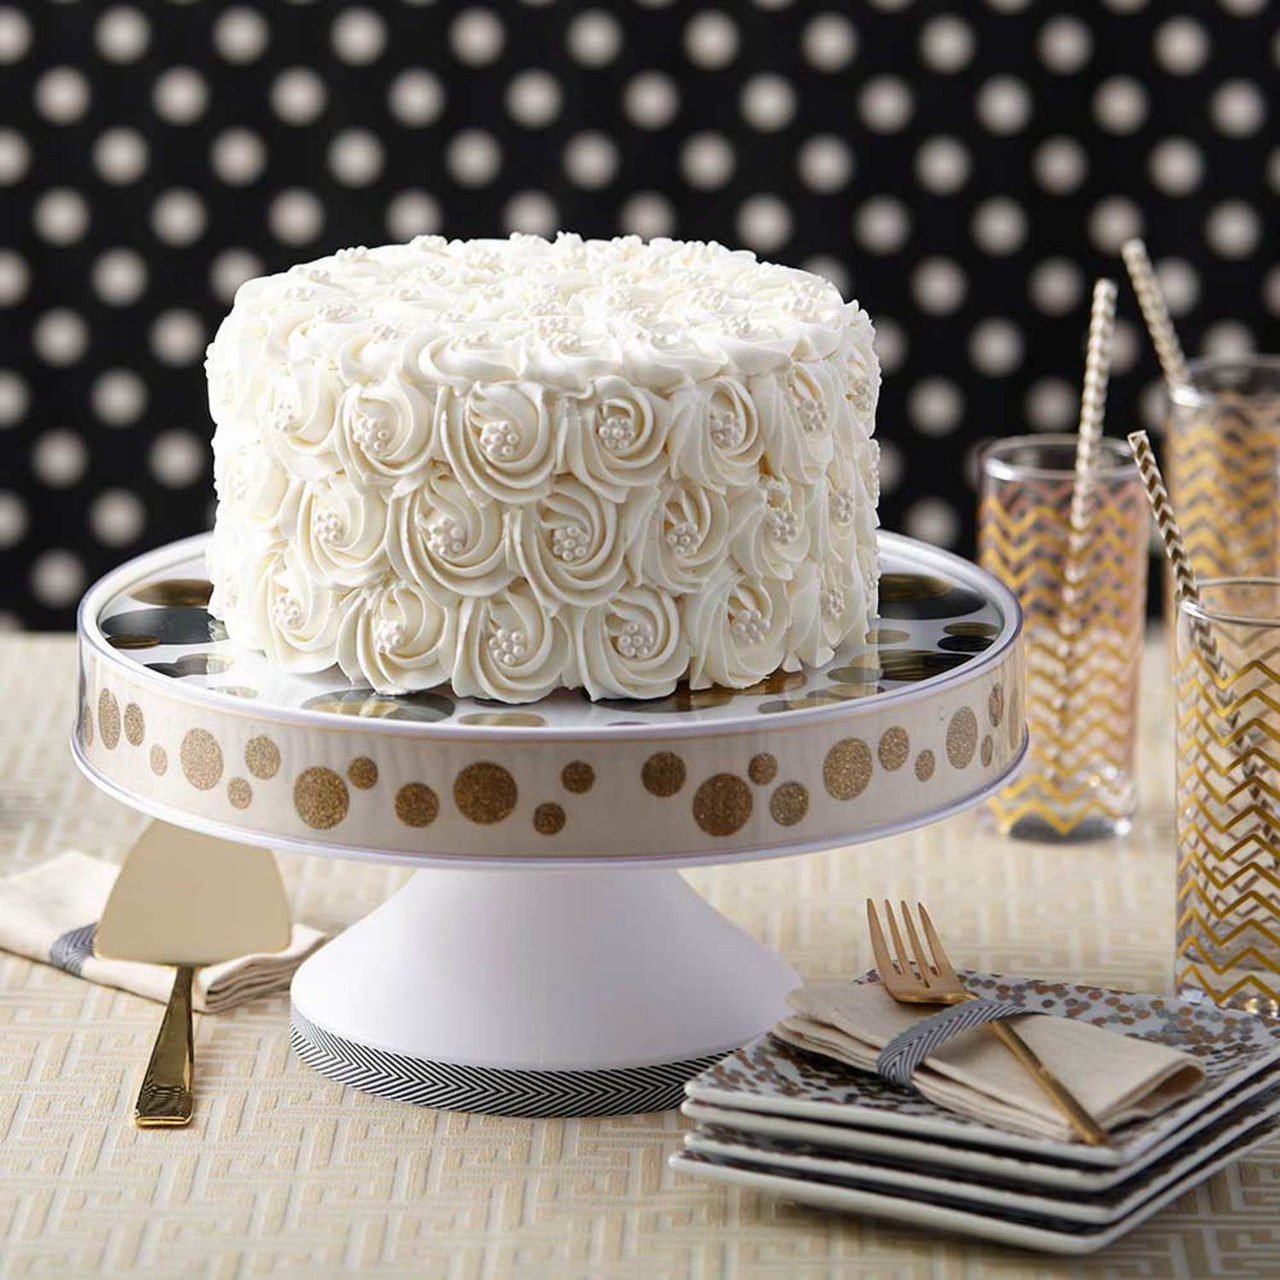 ❤️ 20 Simple Elegant Wedding Cakes Ideas For 2023 - Emma Loves Weddings |  Pretty wedding cakes, Elegant wedding cakes, Wedding cakes with flowers